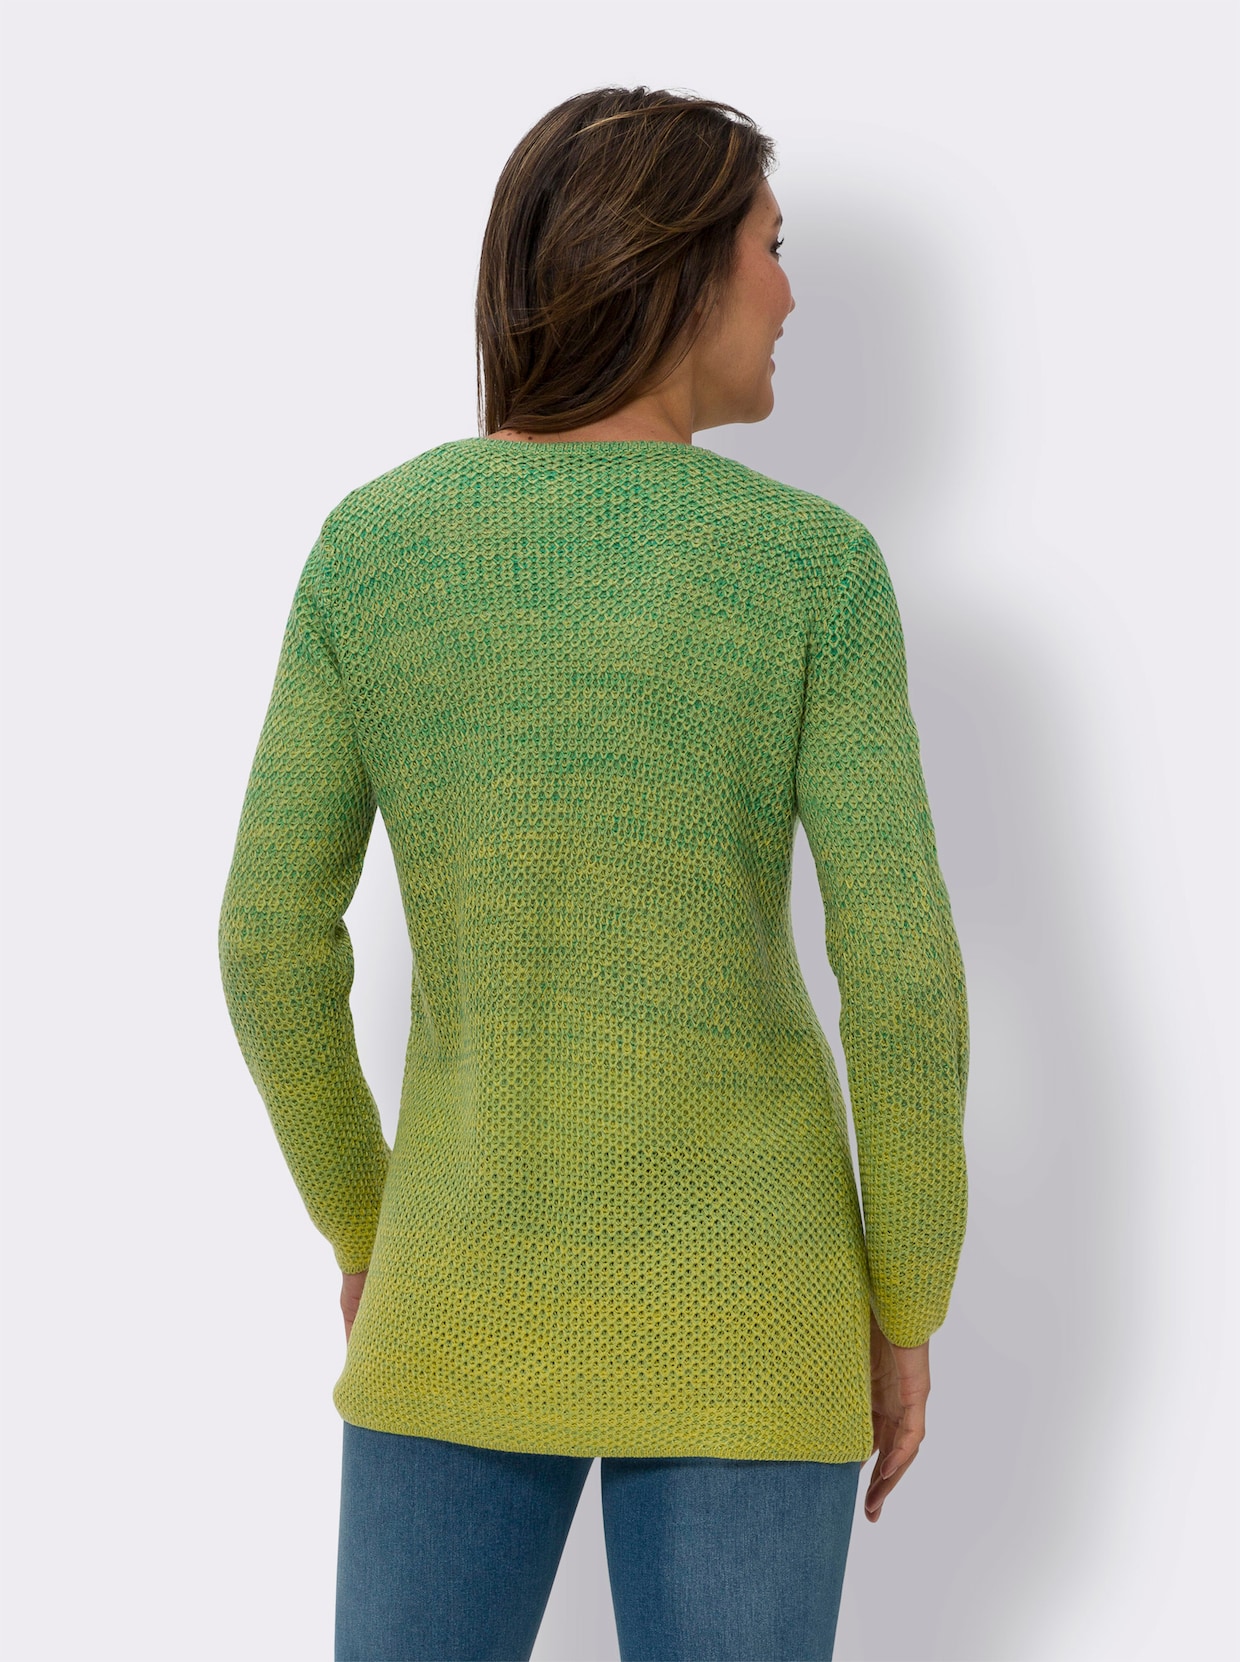 Dlhý pletený sveter - Zeleno-citrónová vzorovaná